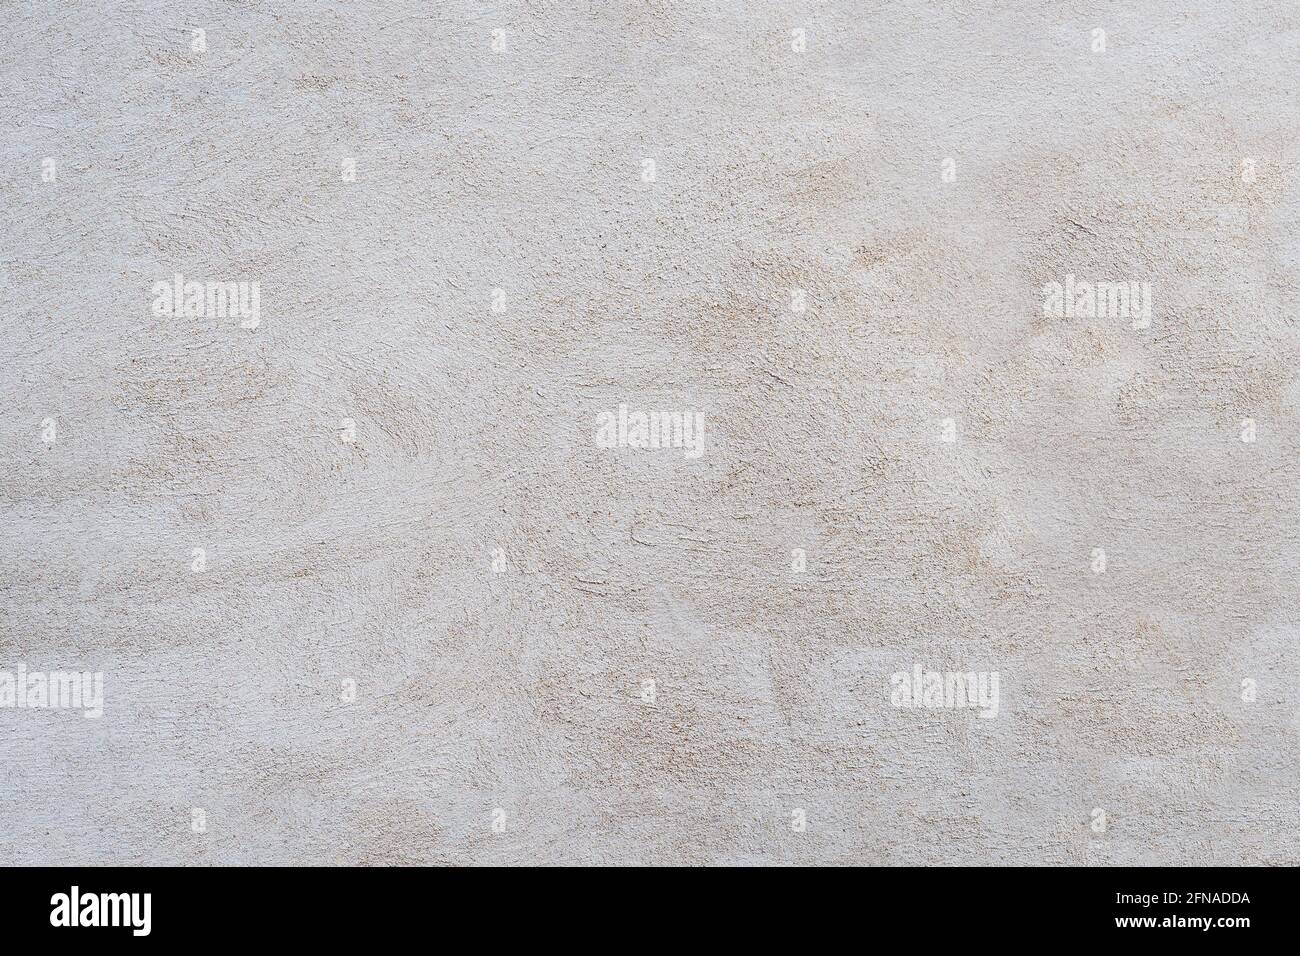 Weiße und graue Betonwand ist eine dekorative oder strukturierte Oberfläche. Kann als Hintergrund oder für Designzwecke verwendet werden Stockfoto